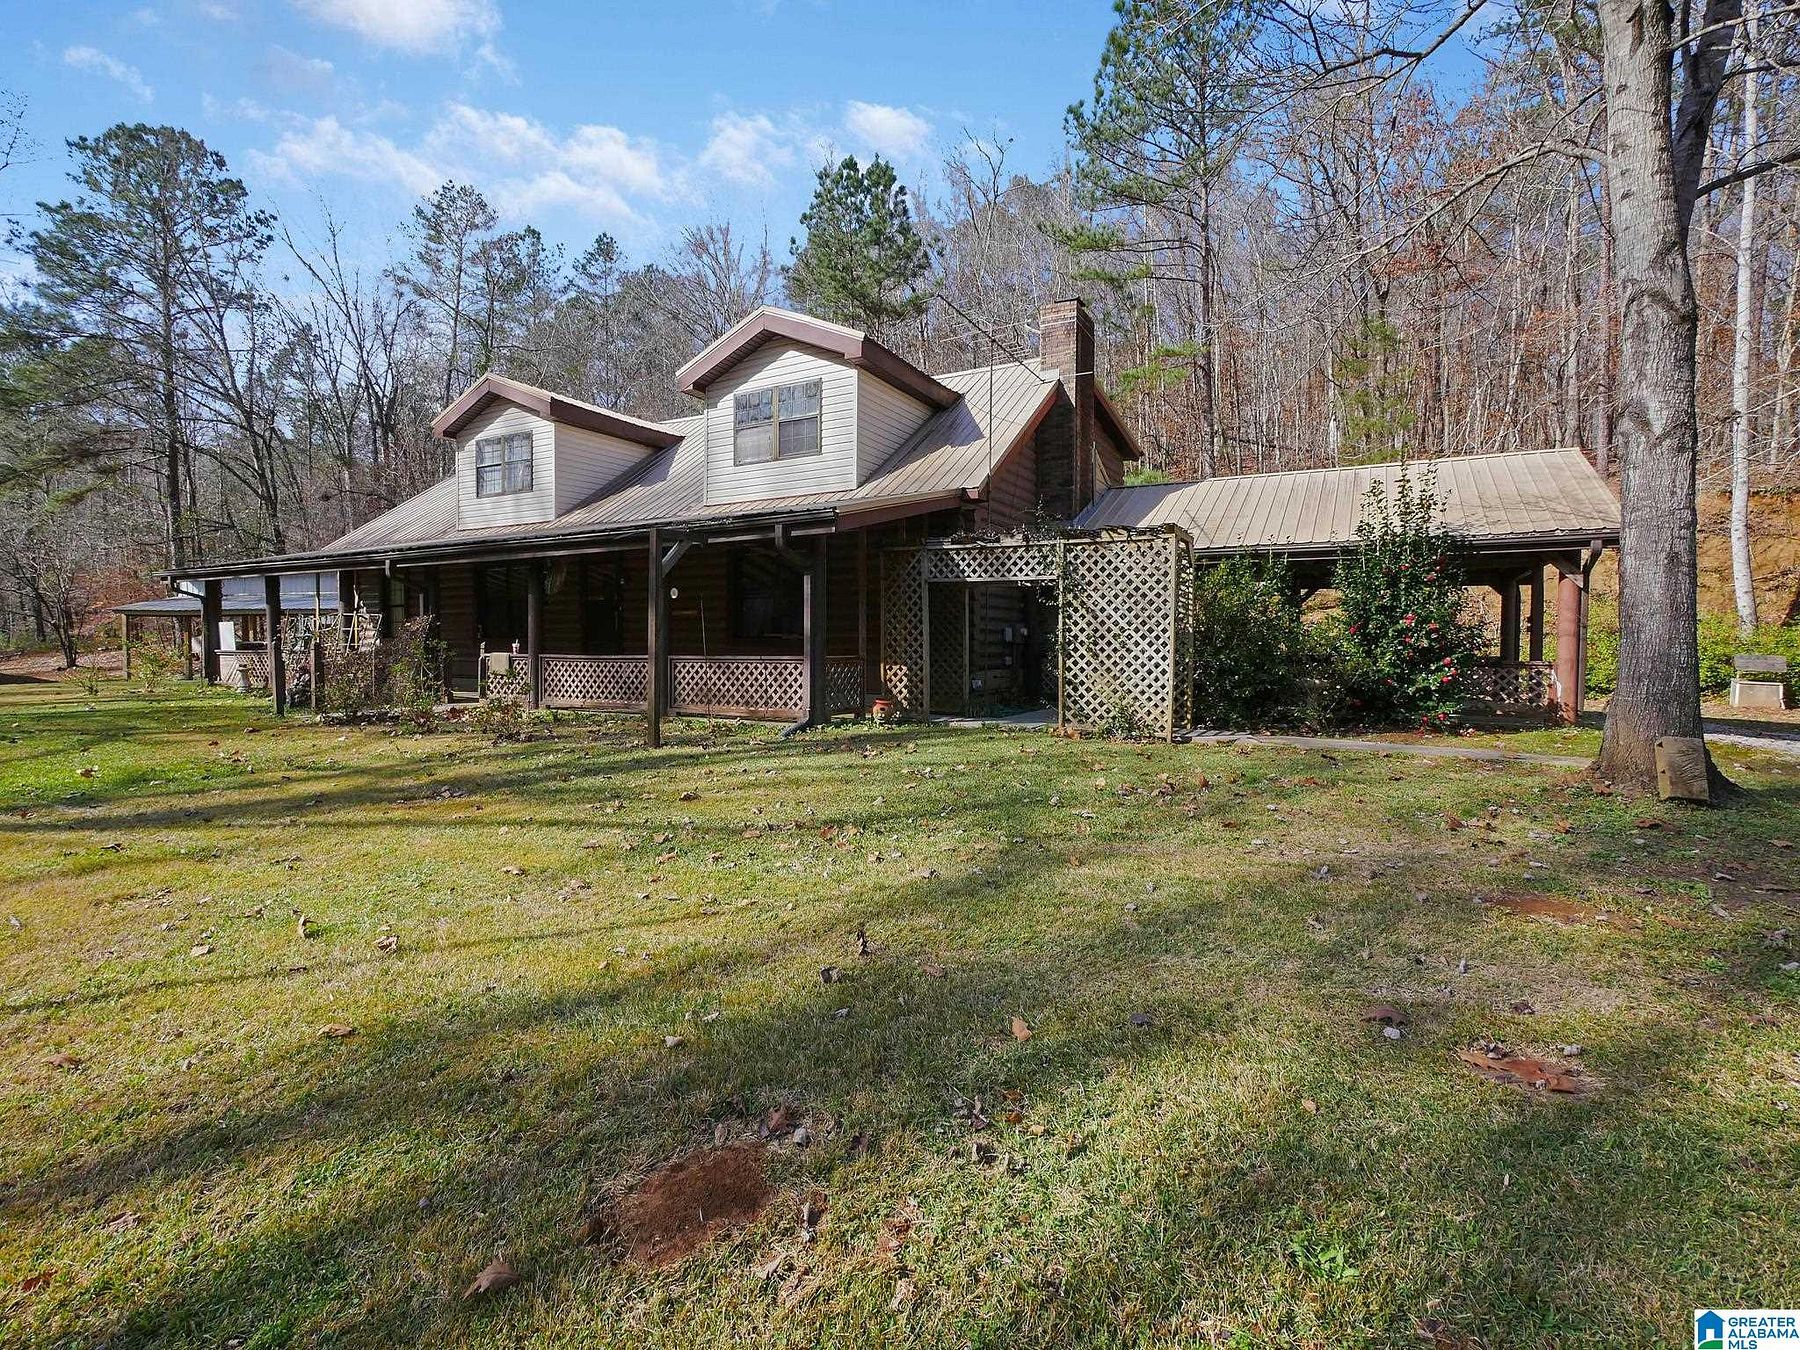 6 Acres of Residential Land & Home Verbena, Alabama, AL